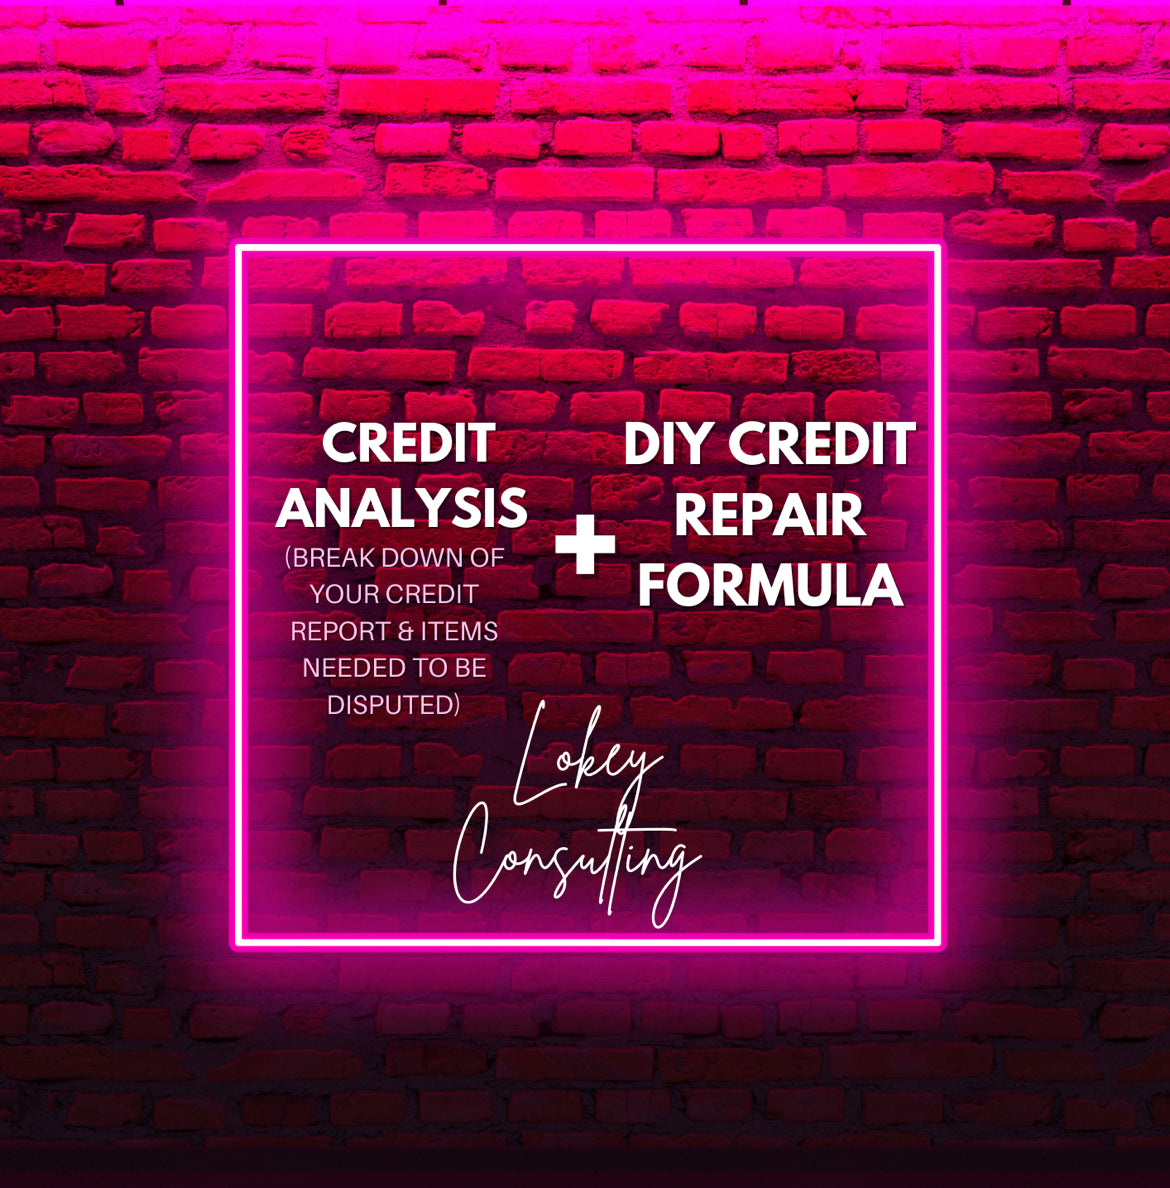 Credit Analysis + DIY Credit Repair Formula